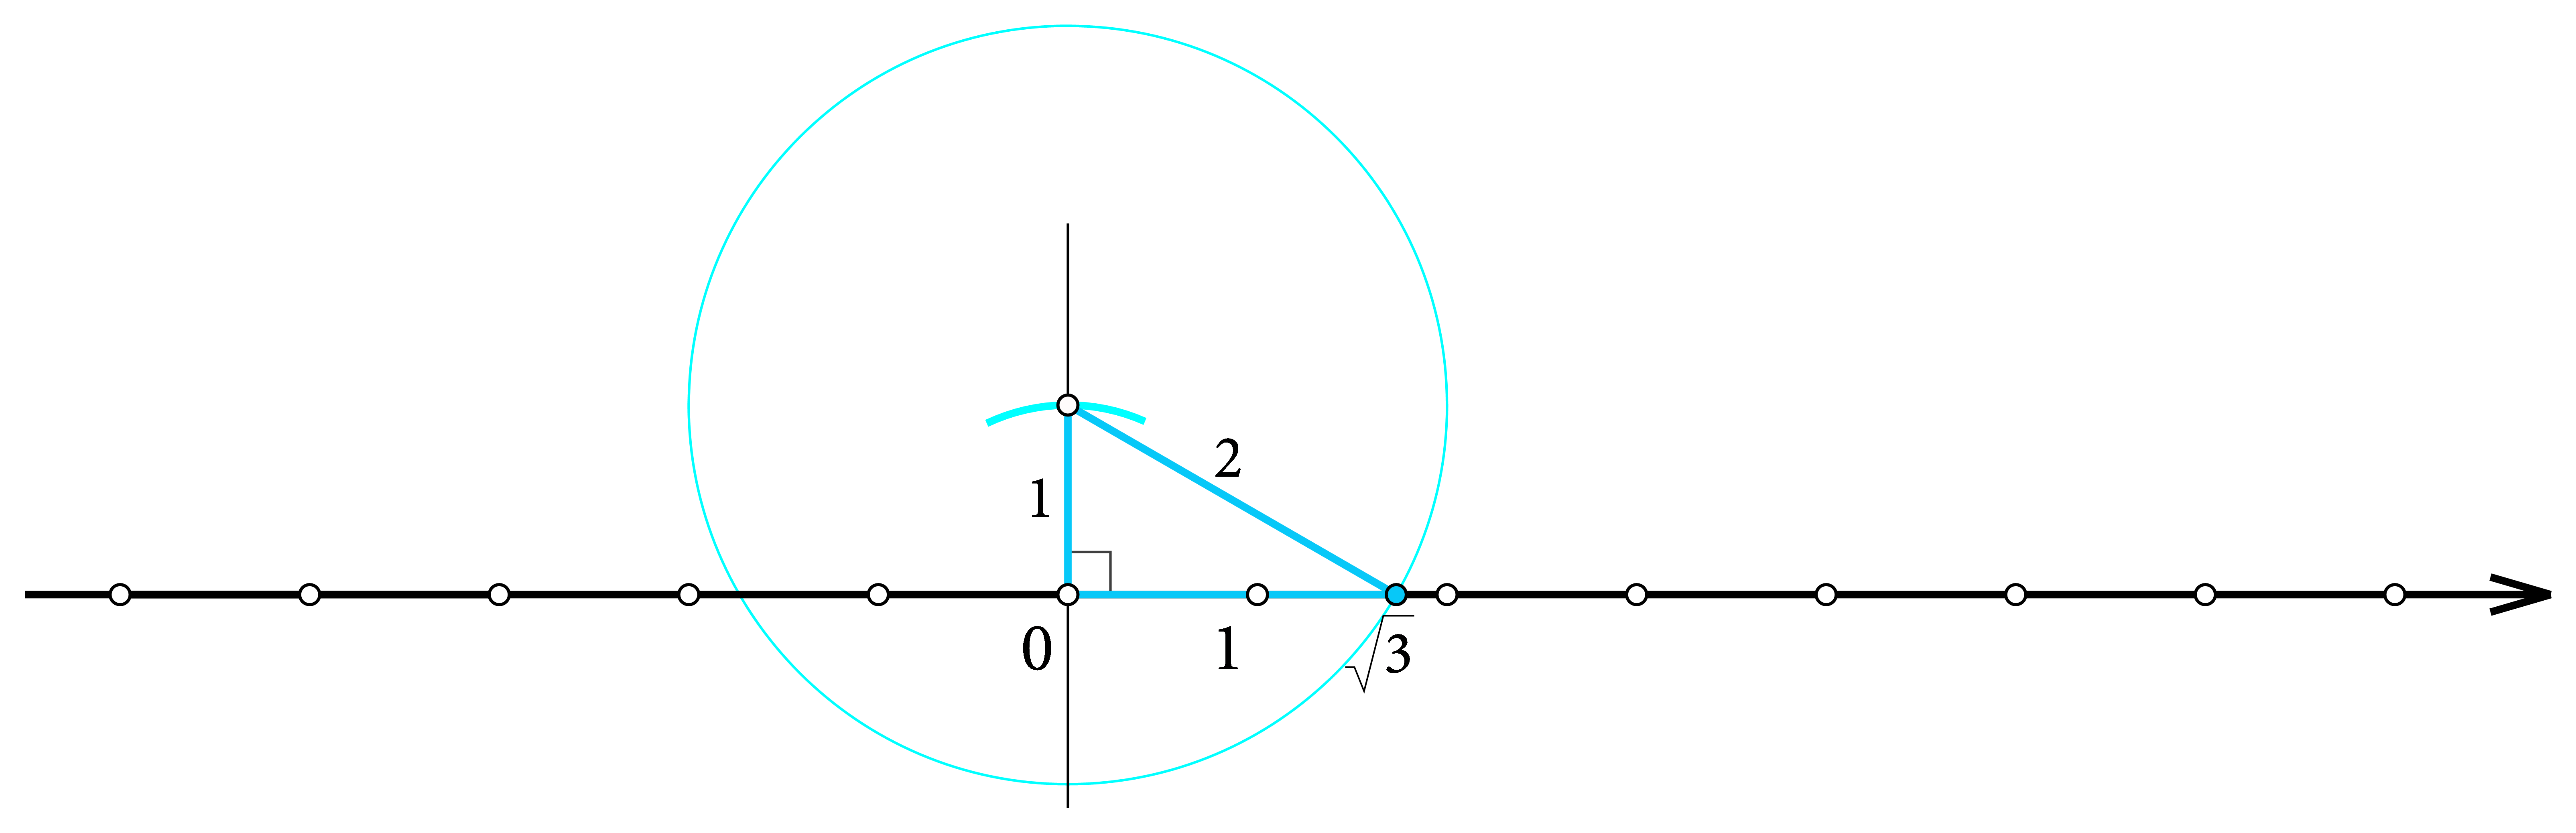 Prikaz konstrukcije korijena od 3 na brojevnom pravcu pomoću trokuta s katetom duljine 1 jedinice i hipotenuzom duljine 2 jedinice.